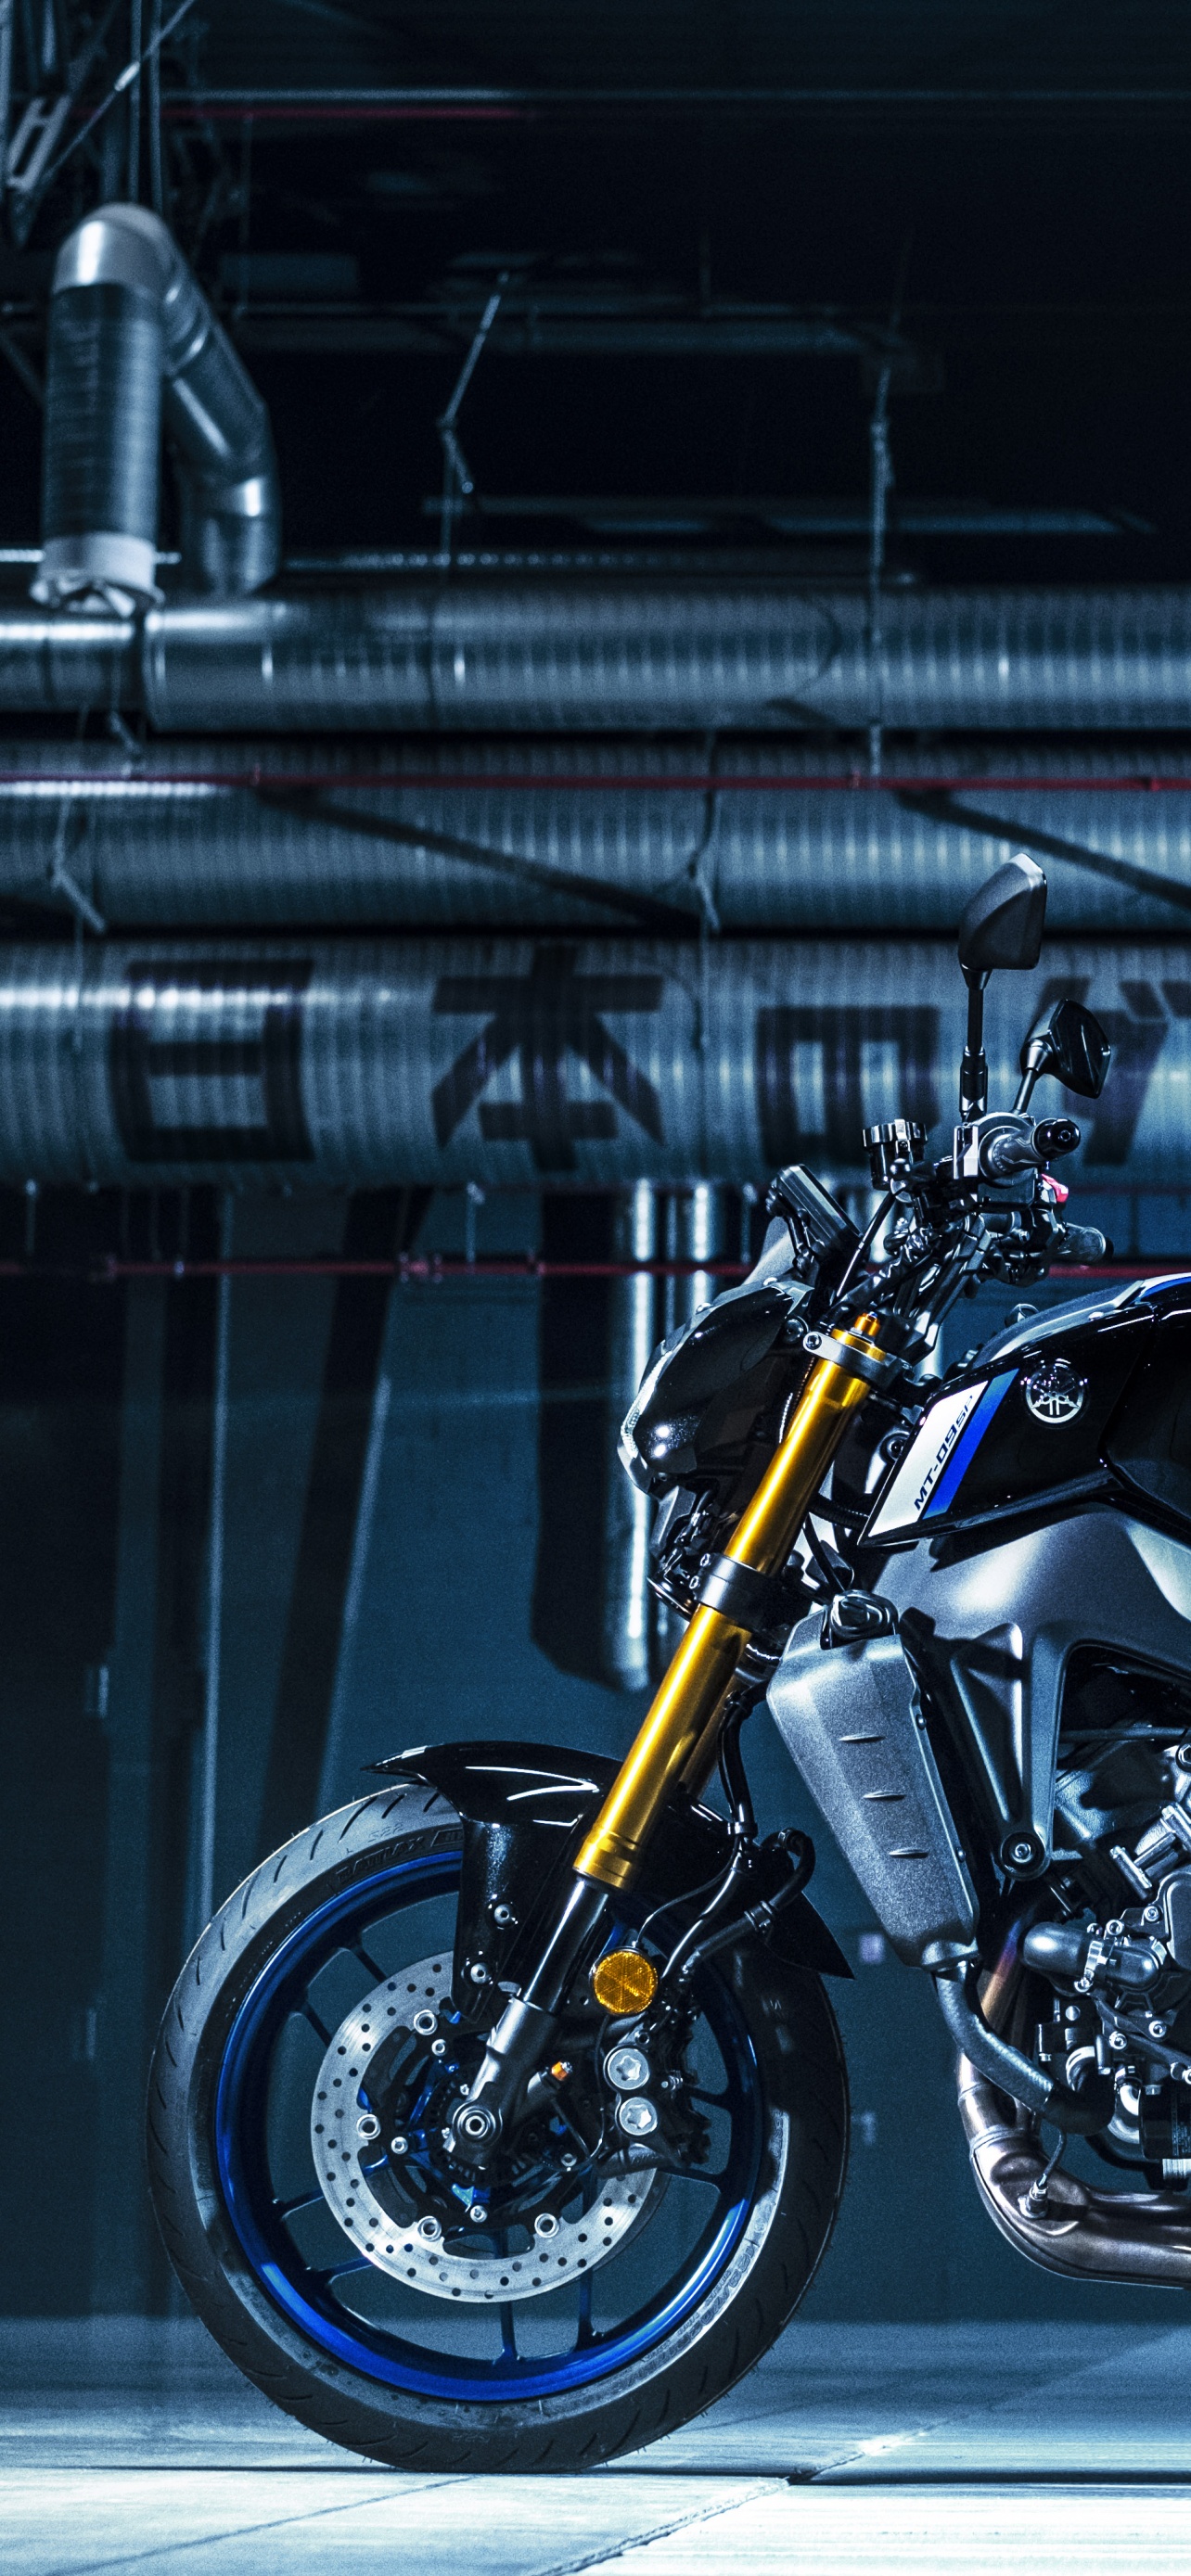 Yamaha MT-15 HD wallpapers | IAMABIKER - Everything Motorcycle!